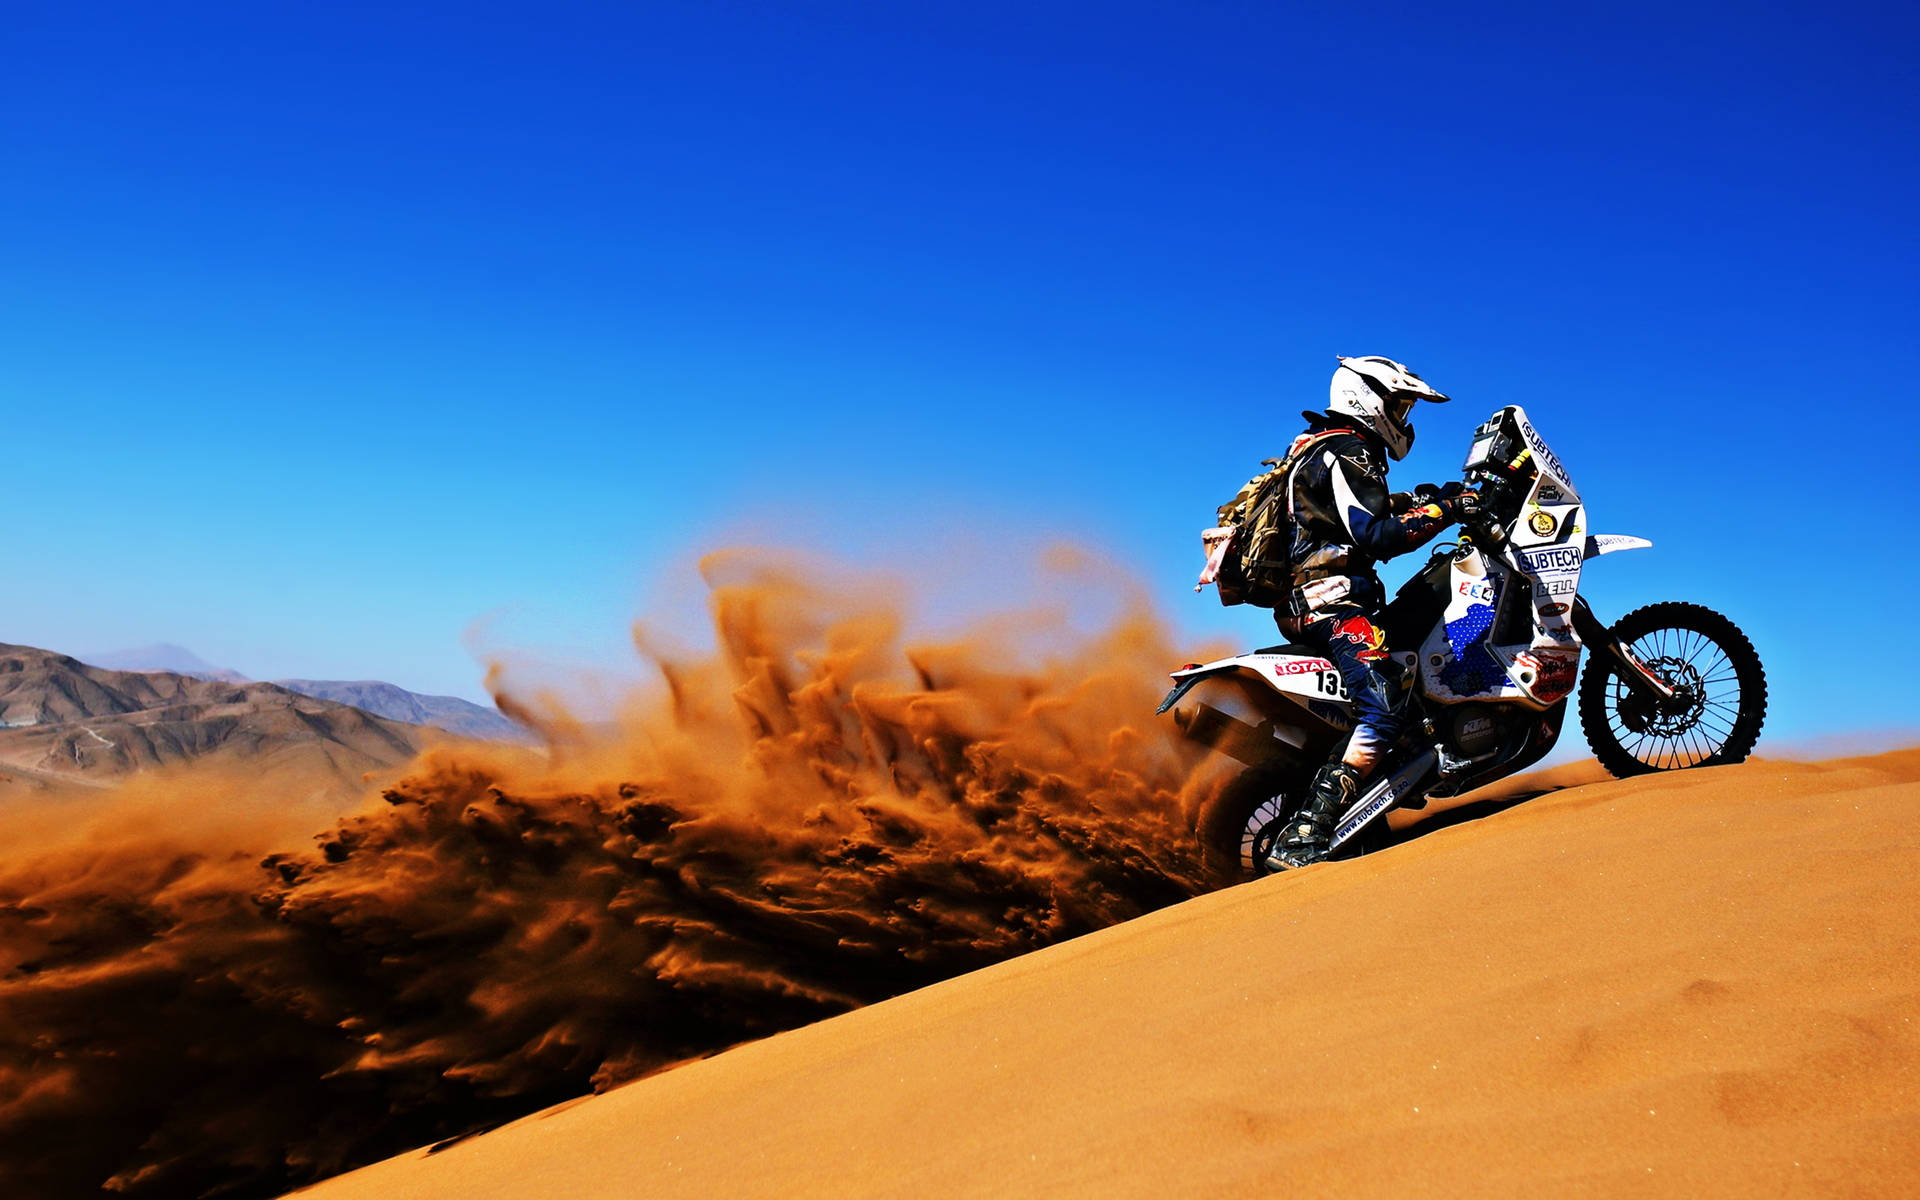 Dakar Desert Sand Motocross